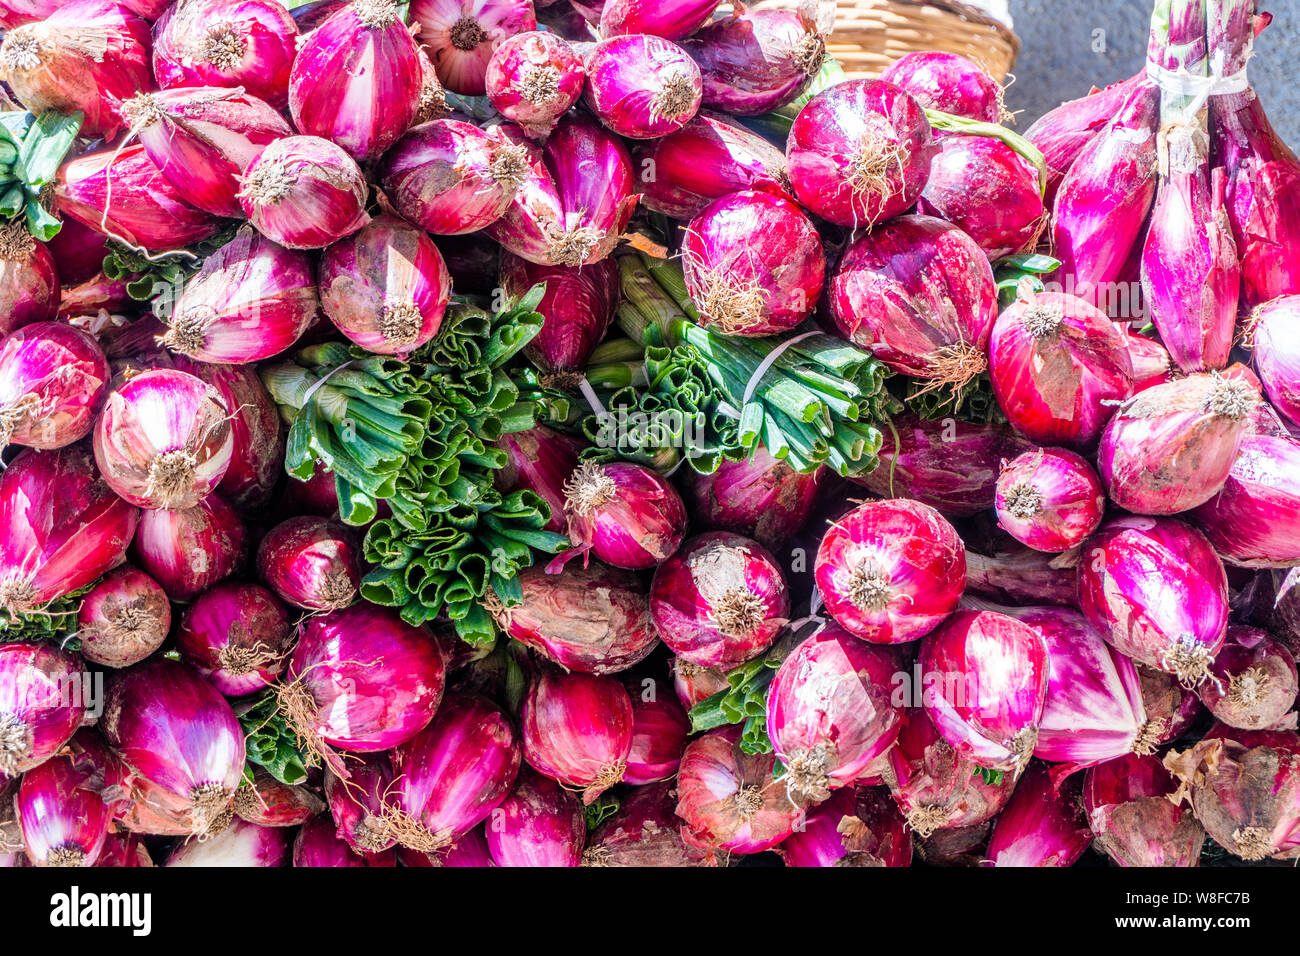 Cipolla rossa venduti su Tropea le strade come specialità della regione Calabria, Italia Foto Stock